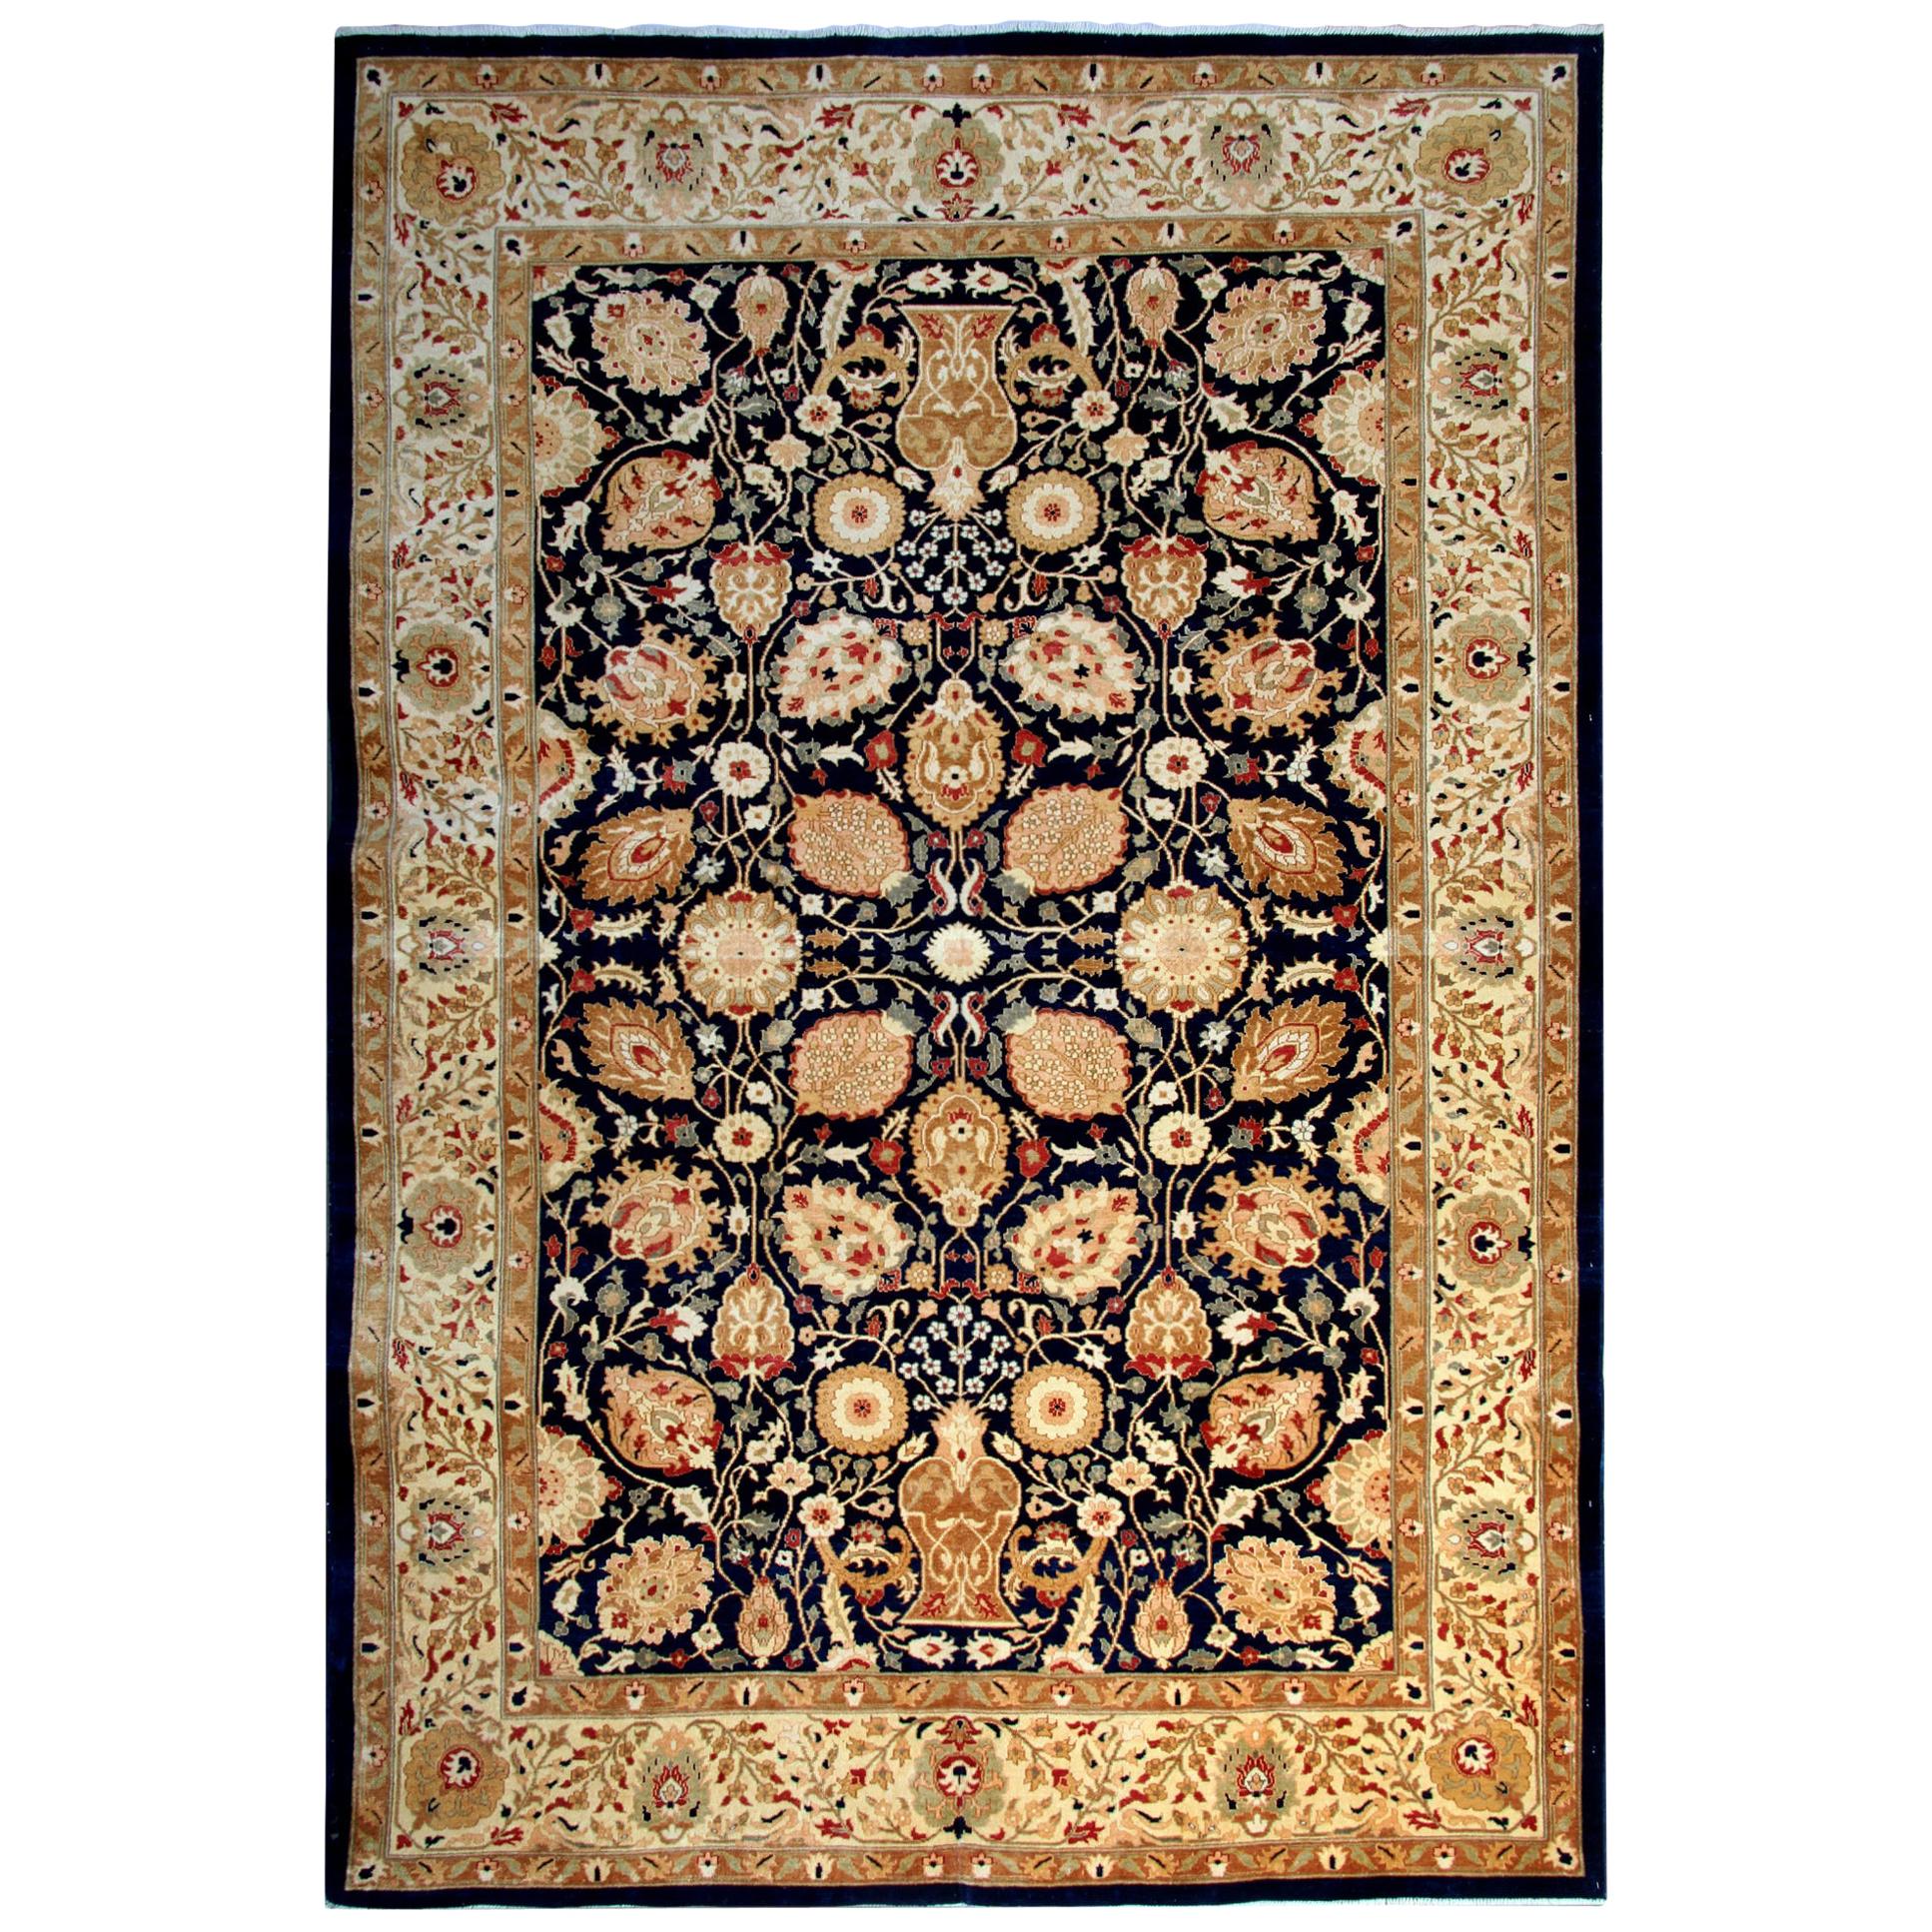 Floraler Teppich Orientalische Teppiche Gold Wohnzimmerteppiche Handgefertigte Teppiche